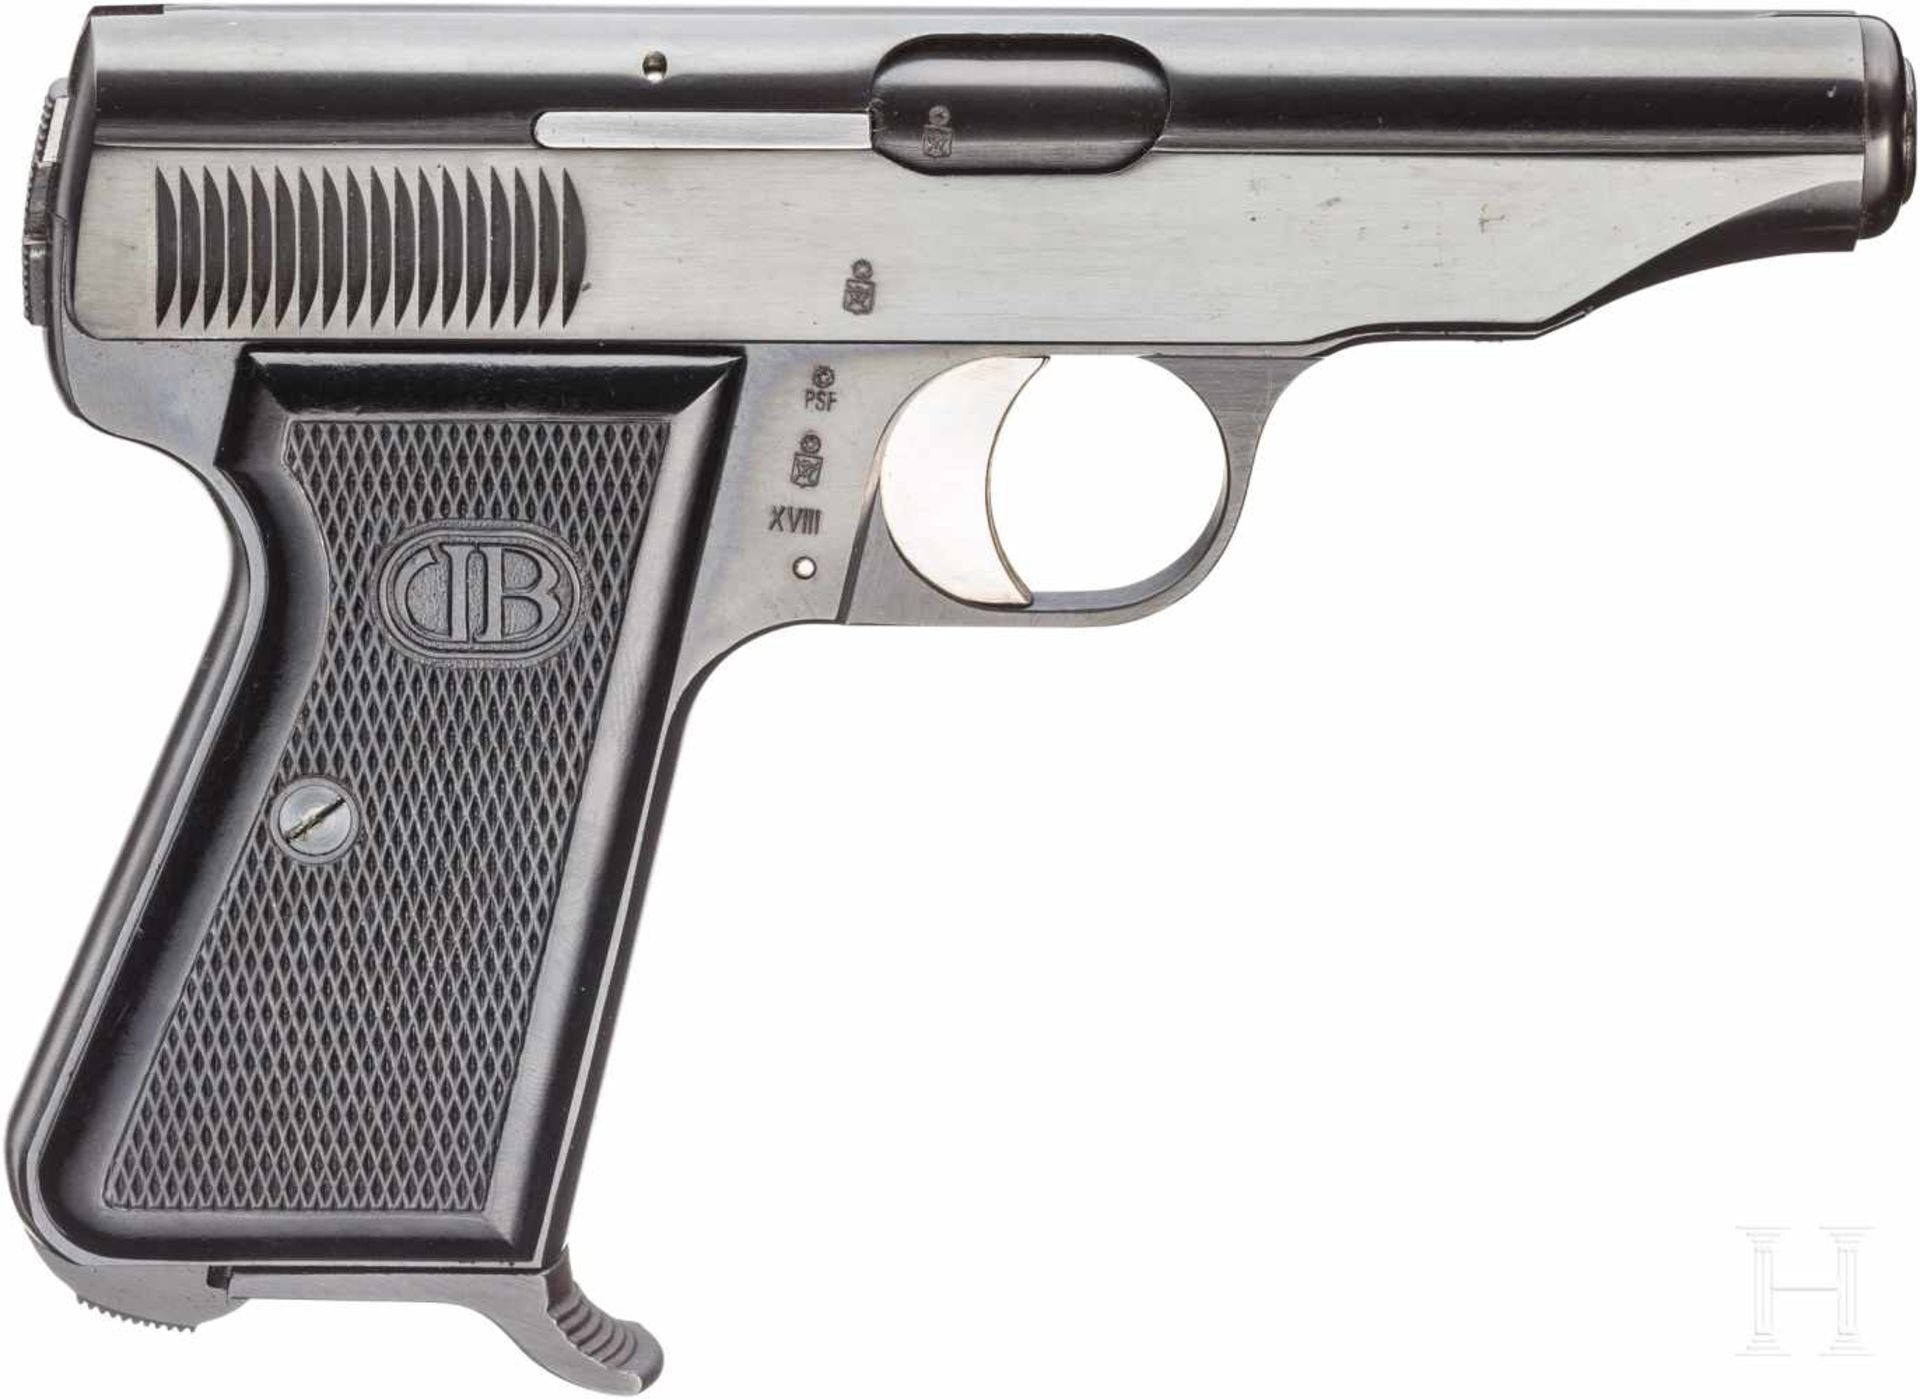 Bernadelli Taschenpistole Ausführung 1947, im KartonKal. 7,65 mm Brown., Nr. 30034, Blanker Lauf, - Bild 2 aus 2